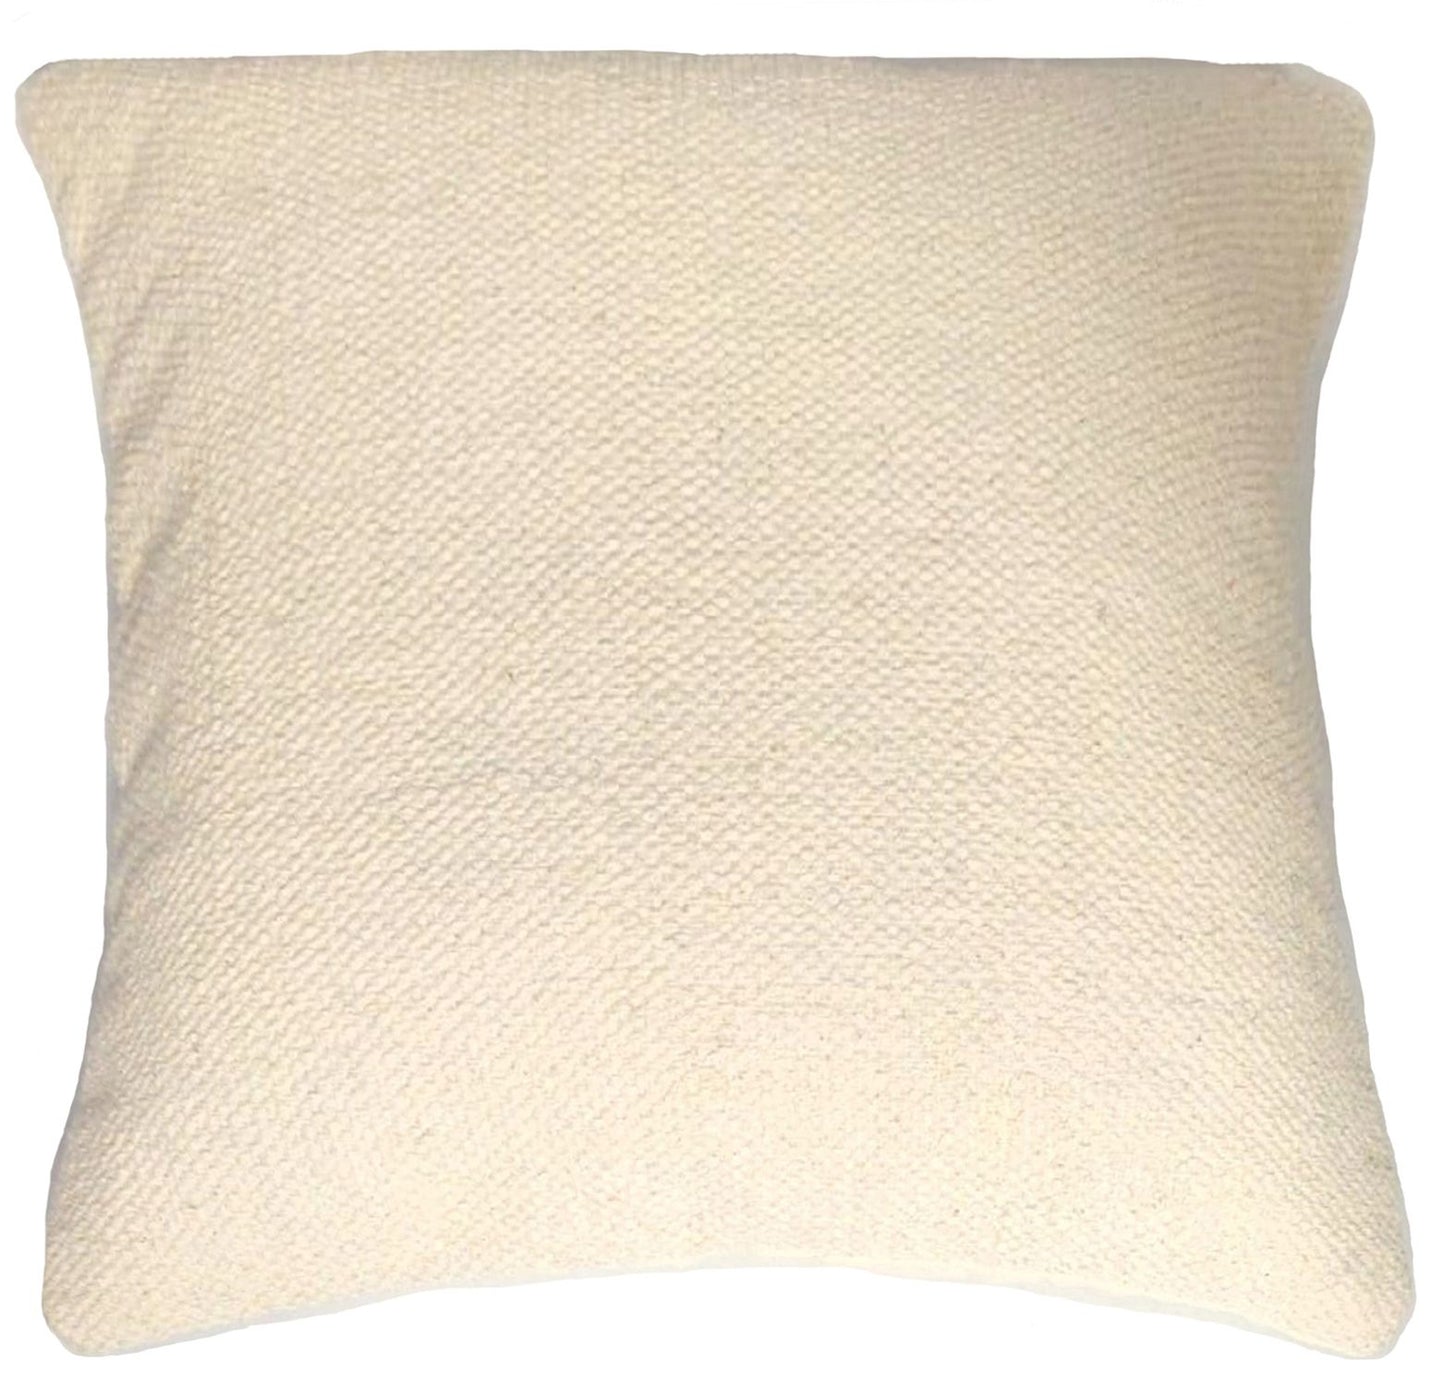 Cushion | Cream Kilim